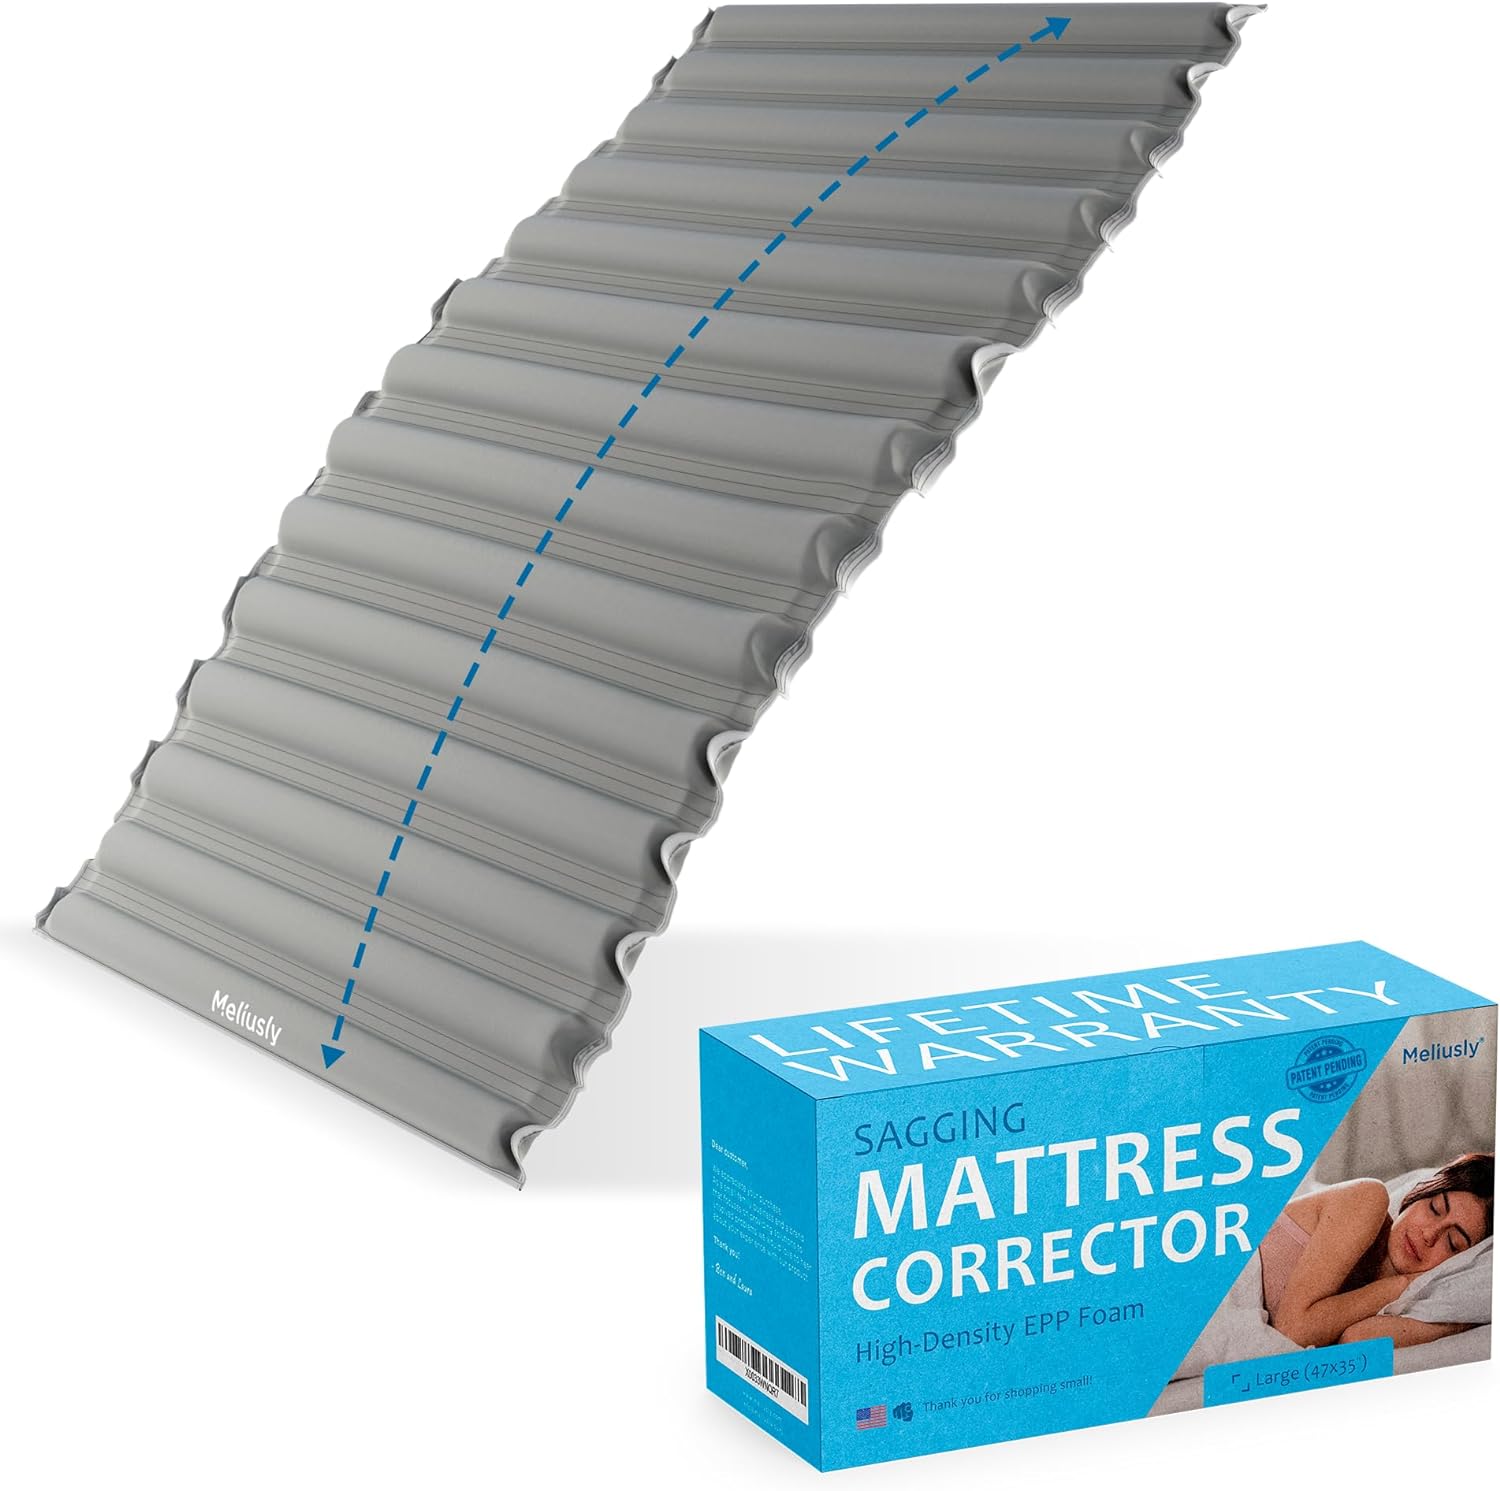  Mattress Helper Under Mattress Support - Fix Your Sagging  Mattress Firmer Solution for Mattresses - Twin- Single Side Coverage (King)  - Mattress Pads